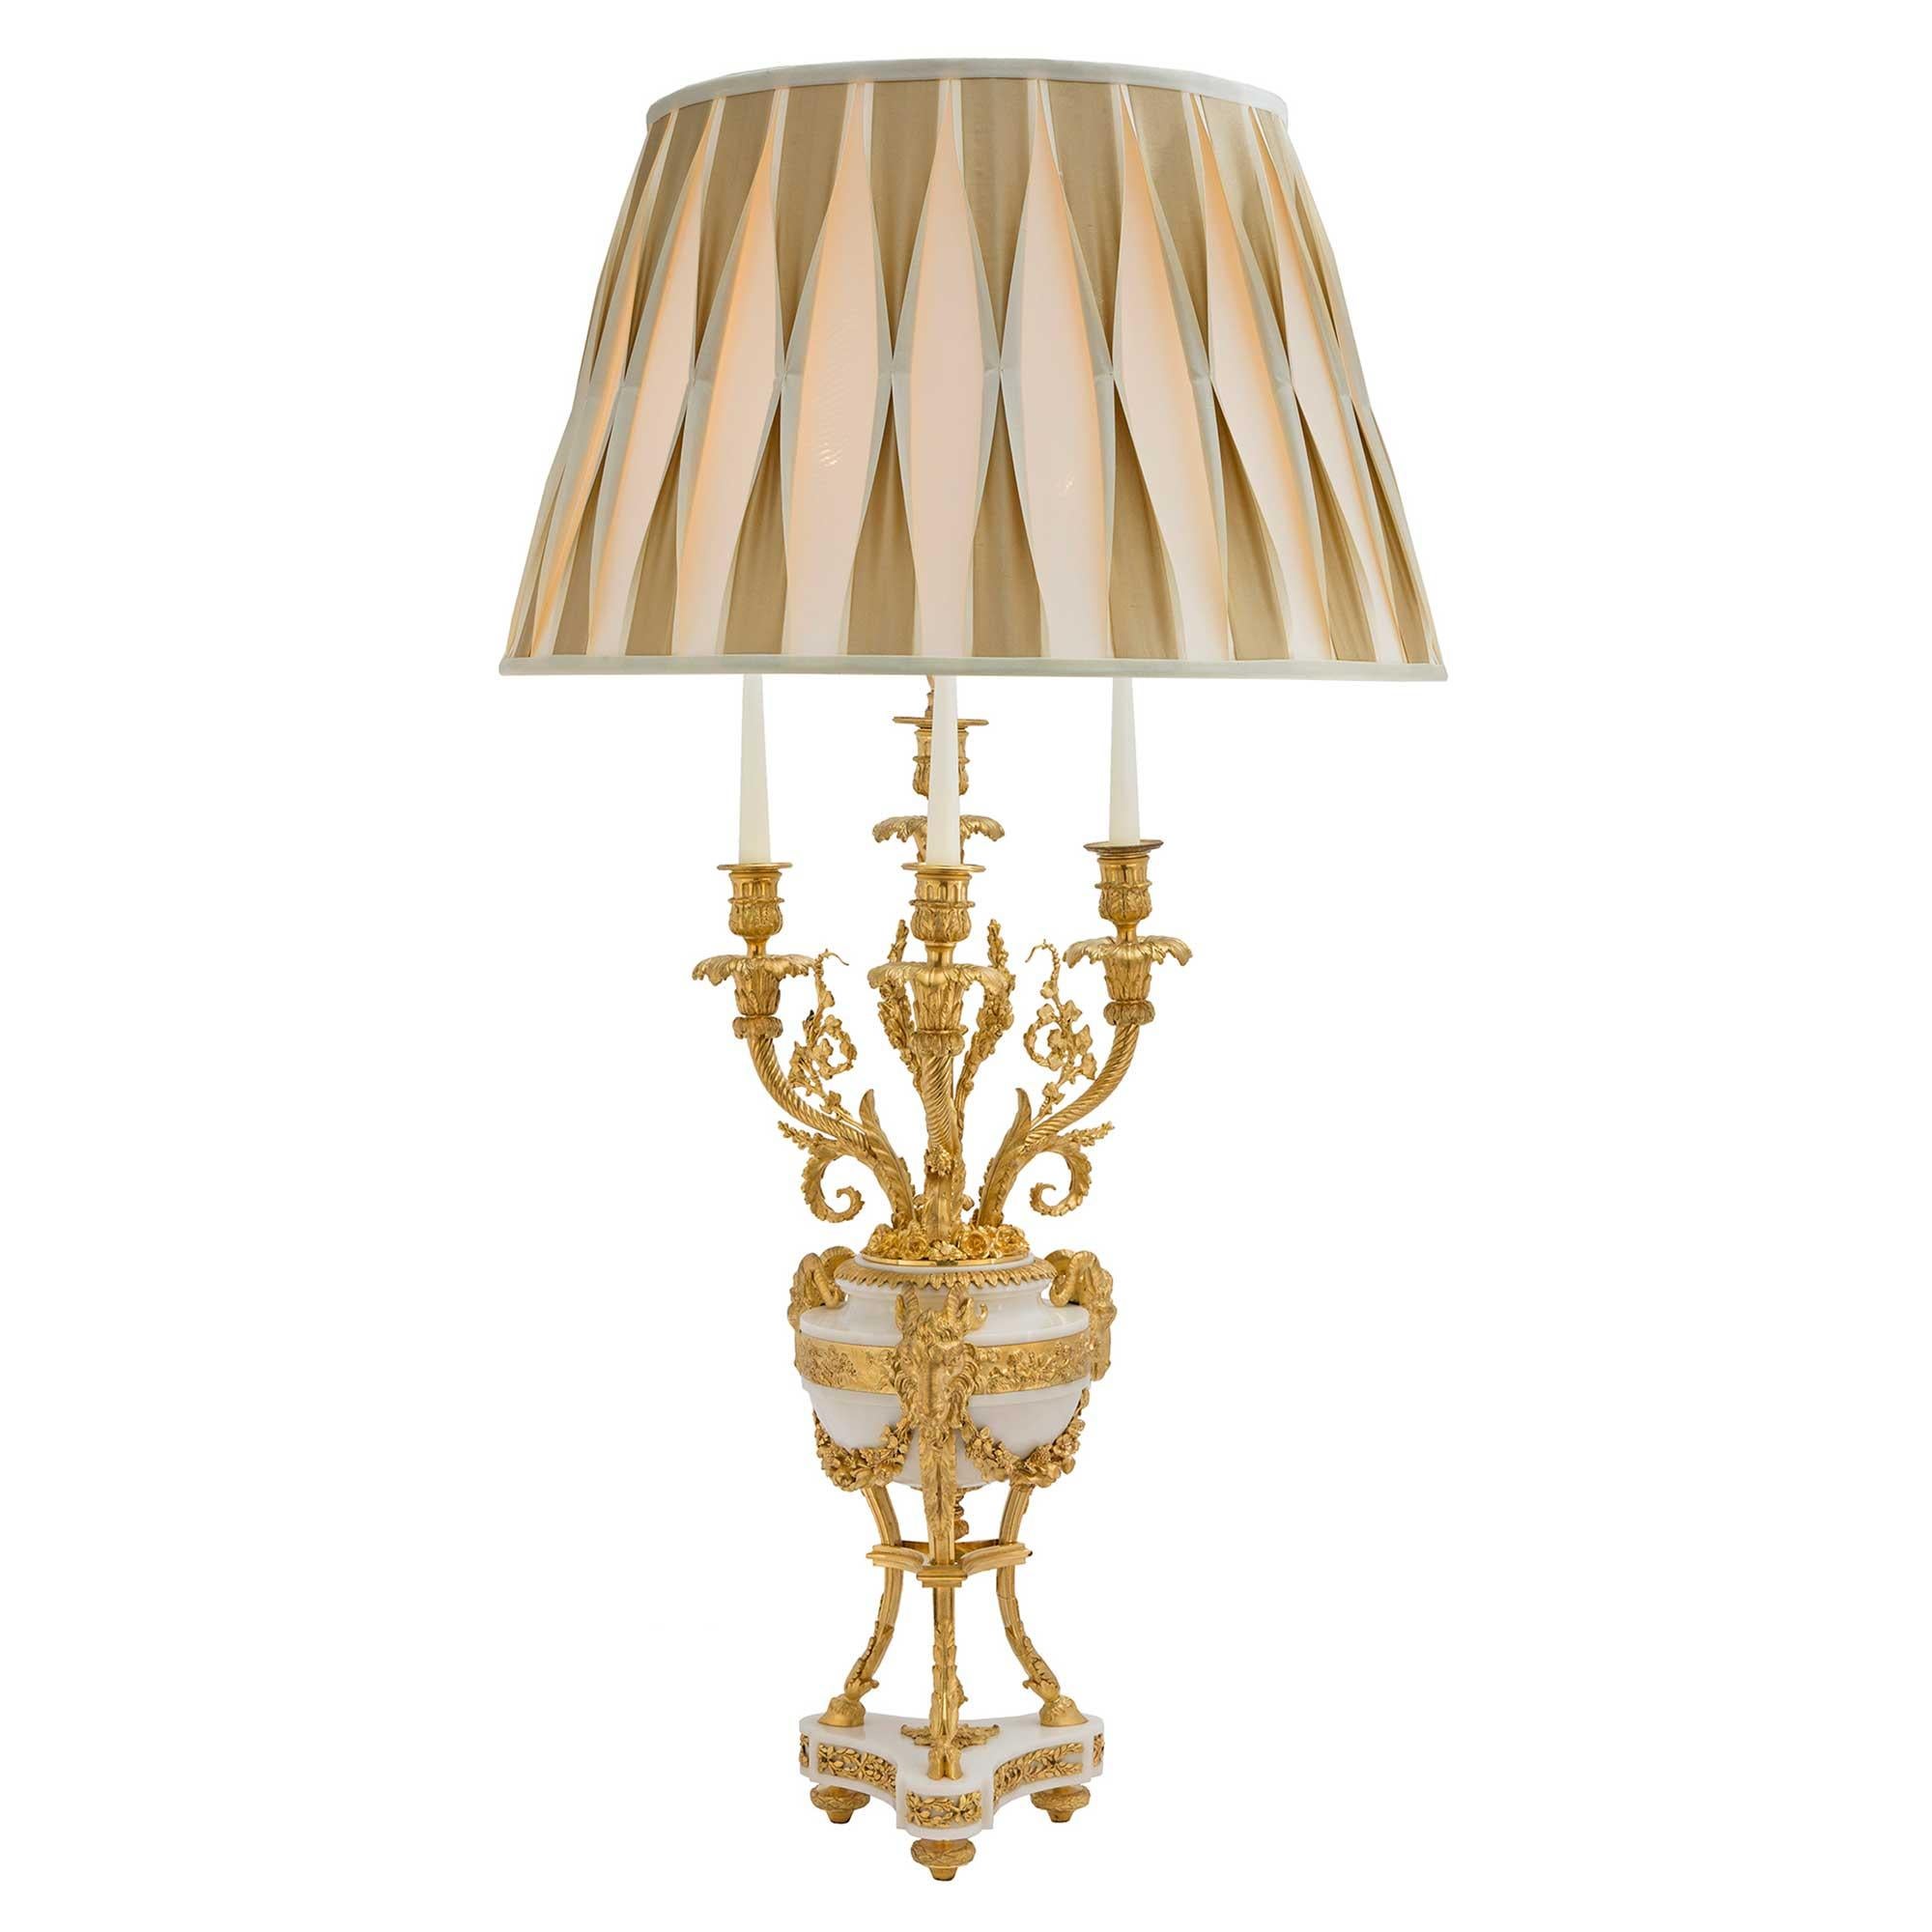 Une paire de magnifiques lampes candélabres françaises du 19ème siècle de style Louis XVI en marbre blanc de Carrare et bronze doré. Chaque lampe repose sur des pieds en topie en bronze doré, sous une base triangulaire en marbre avec des montures en